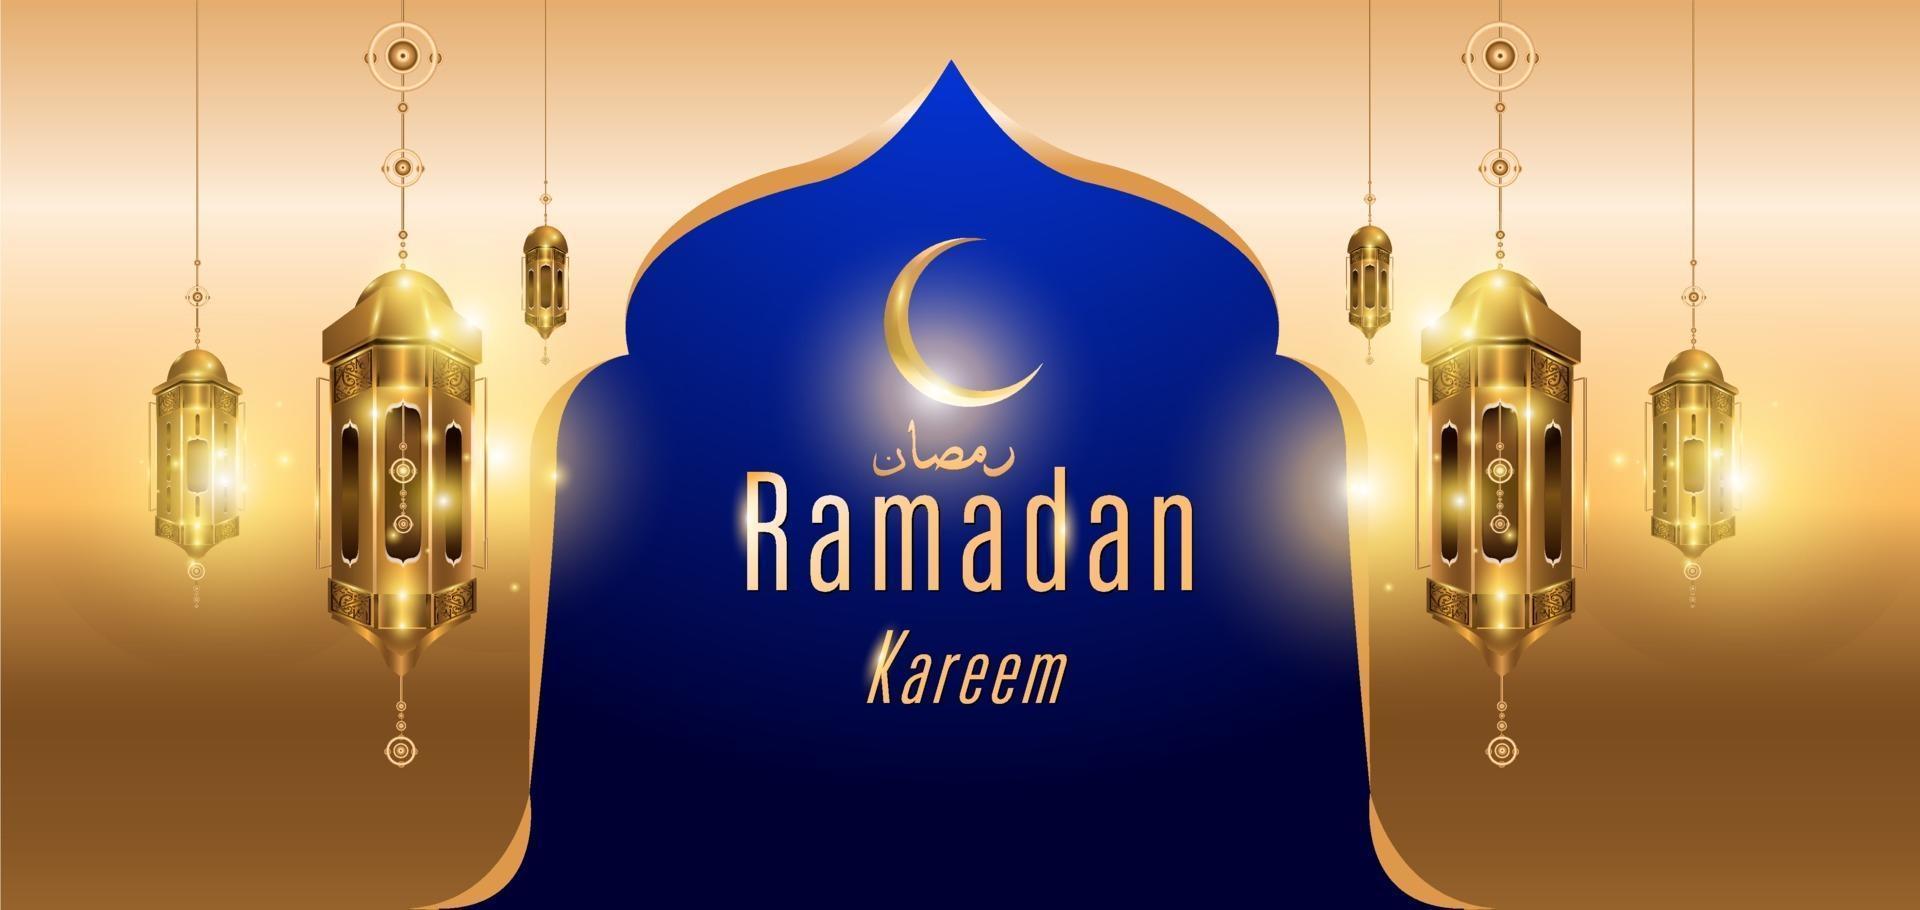 Ramadan Kareem islamische goldene Moschee Grußkarte vektor